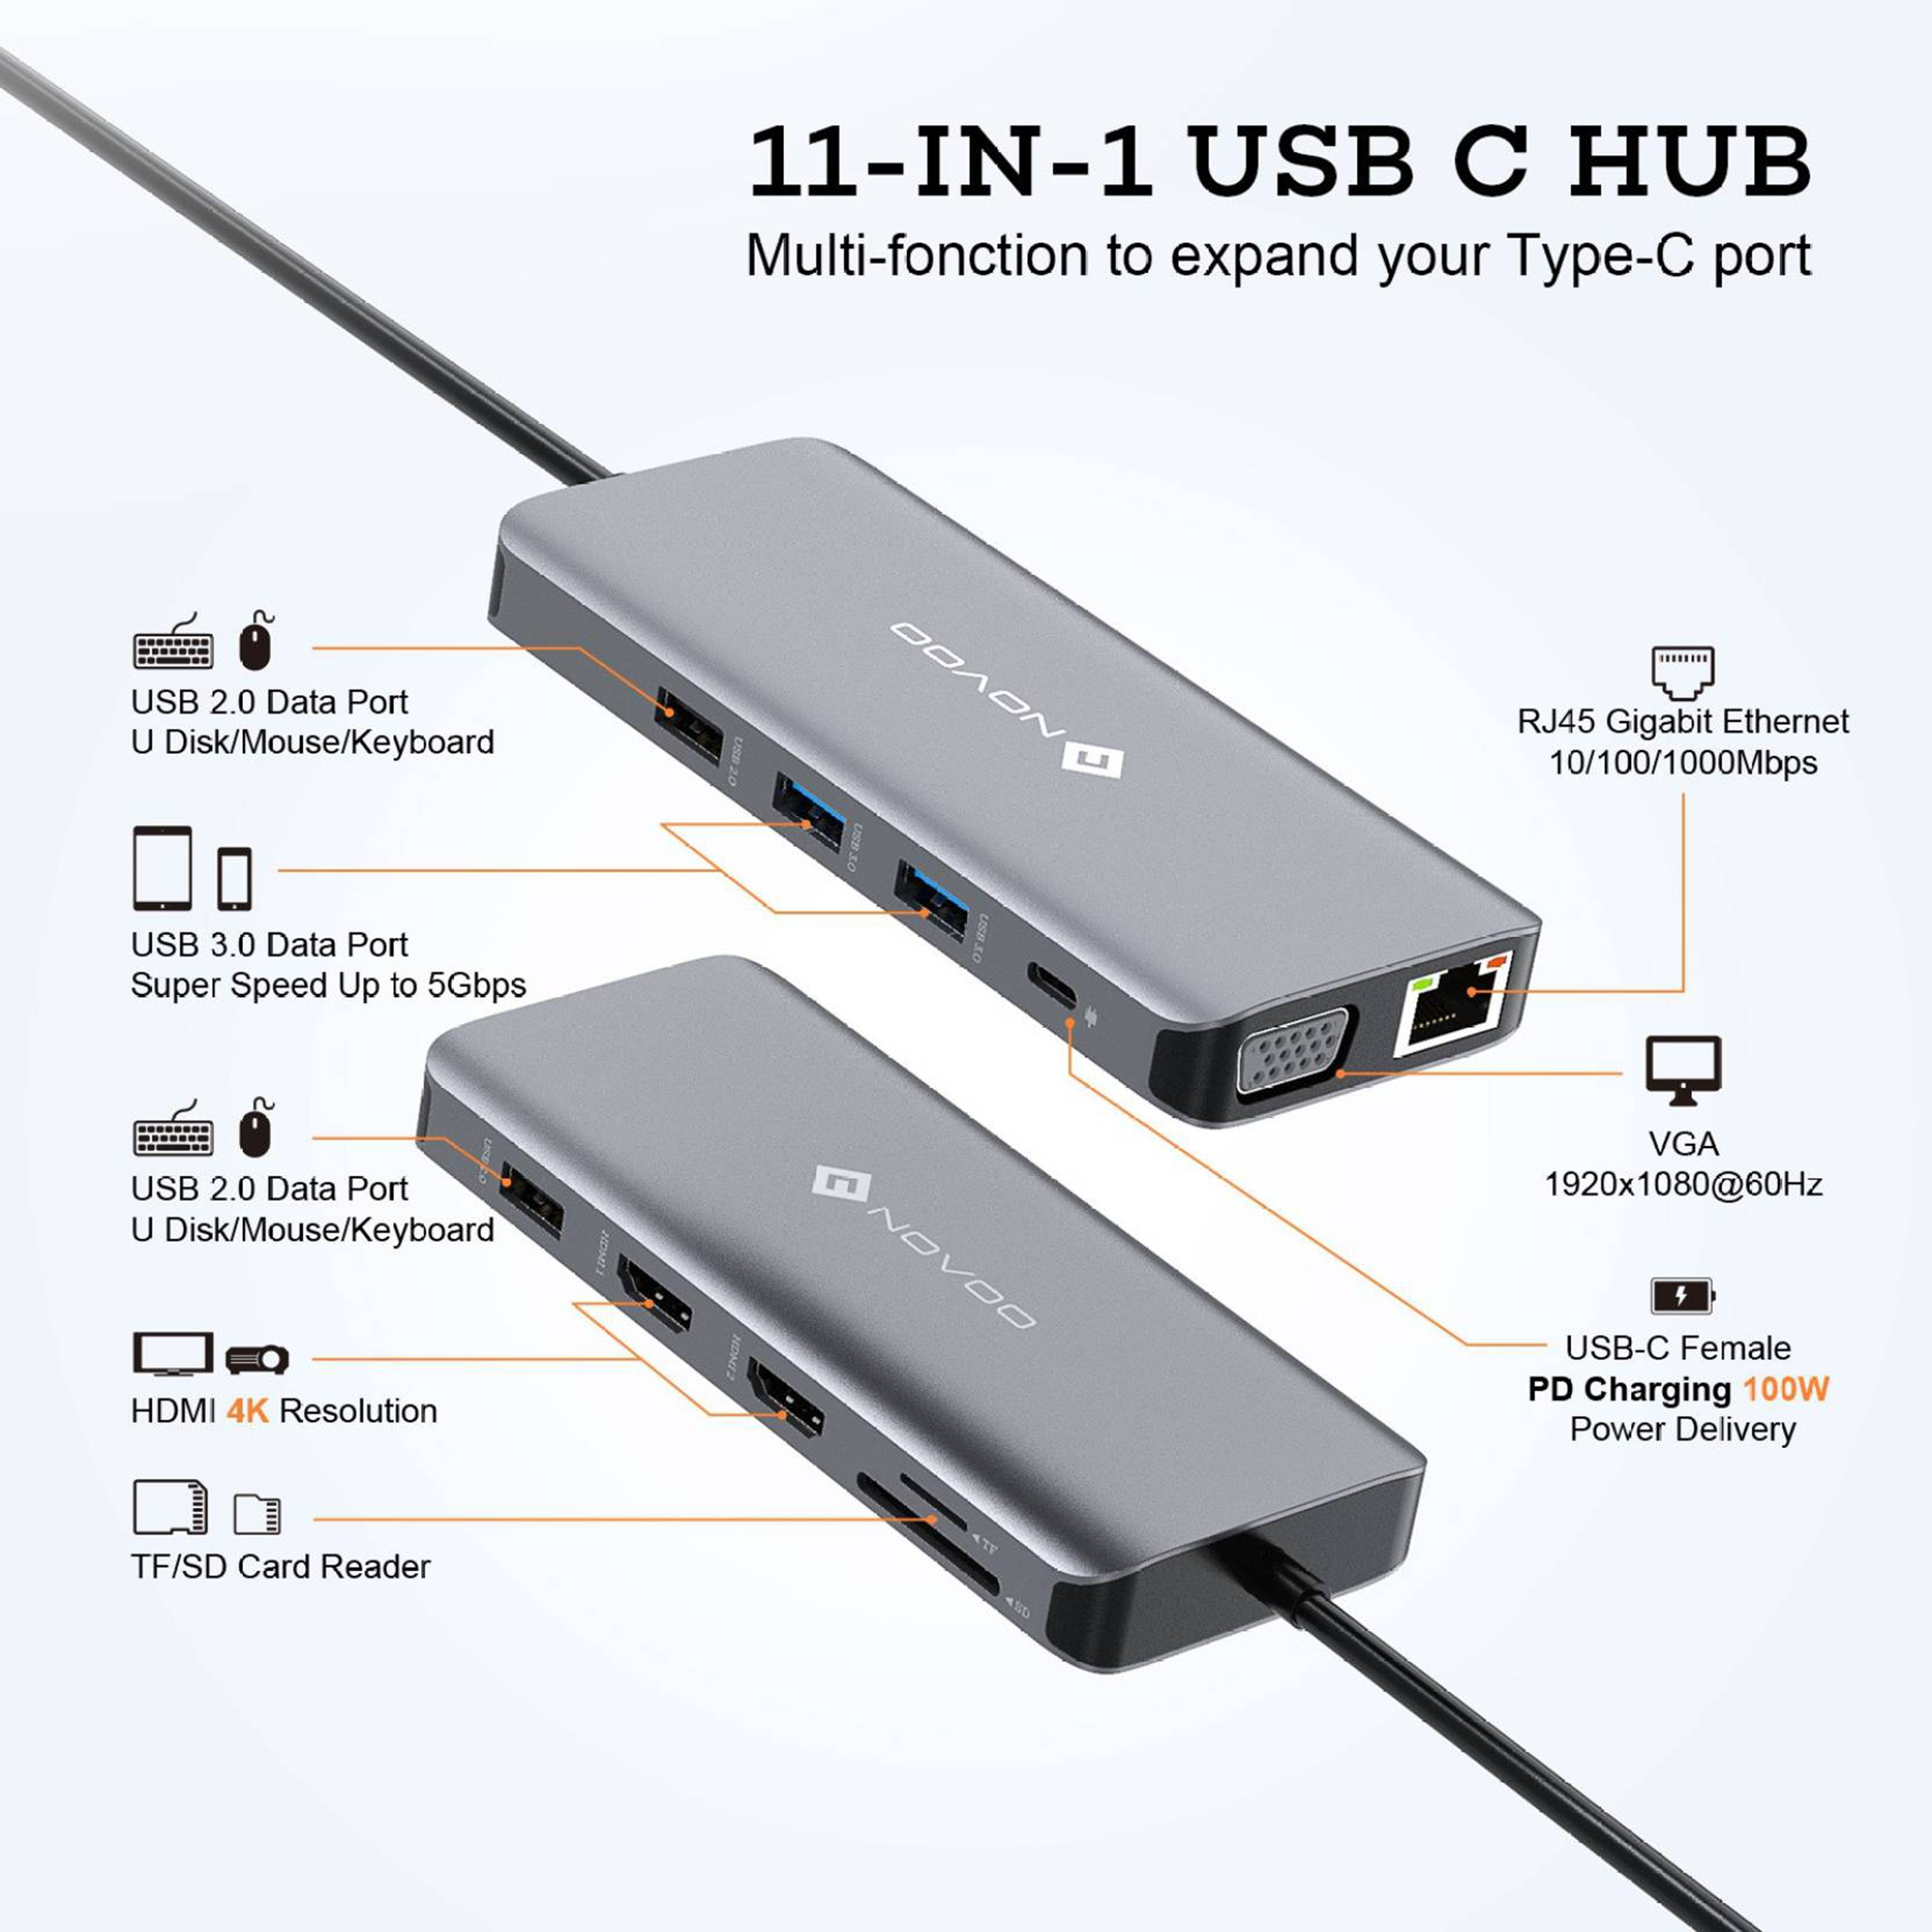 NOVOO 4 in 1 NVHUB105K04PRDK USB hub Price in India - Buy NOVOO 4